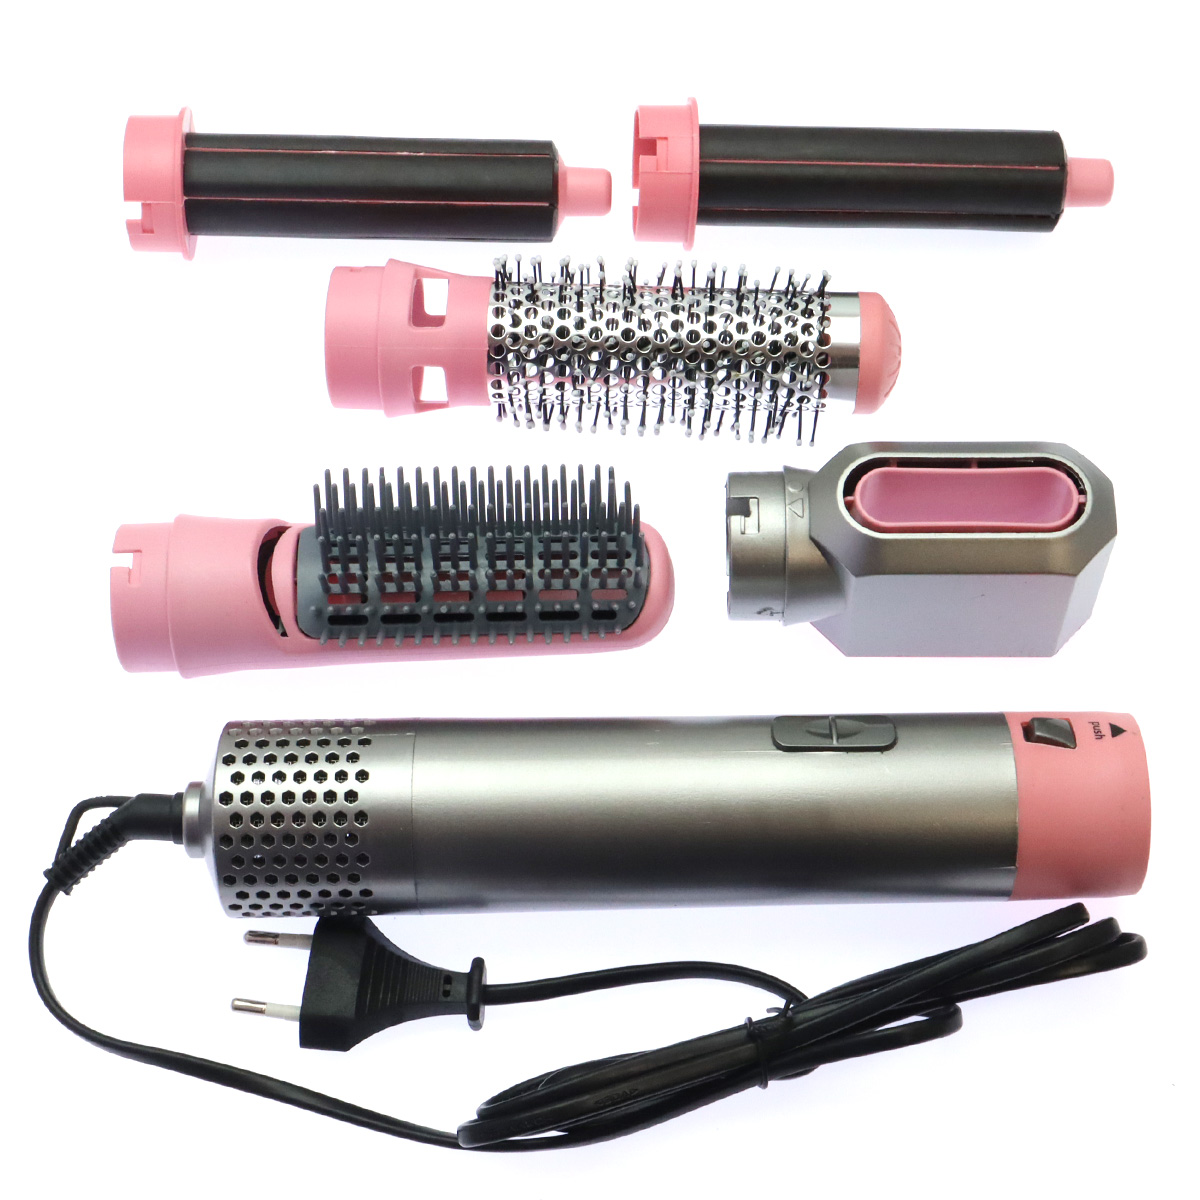 Стайлер (фен щетка) для волос Hot Air Styler, 5 насадок, 1000W, кейс, цвет серебристо розовый